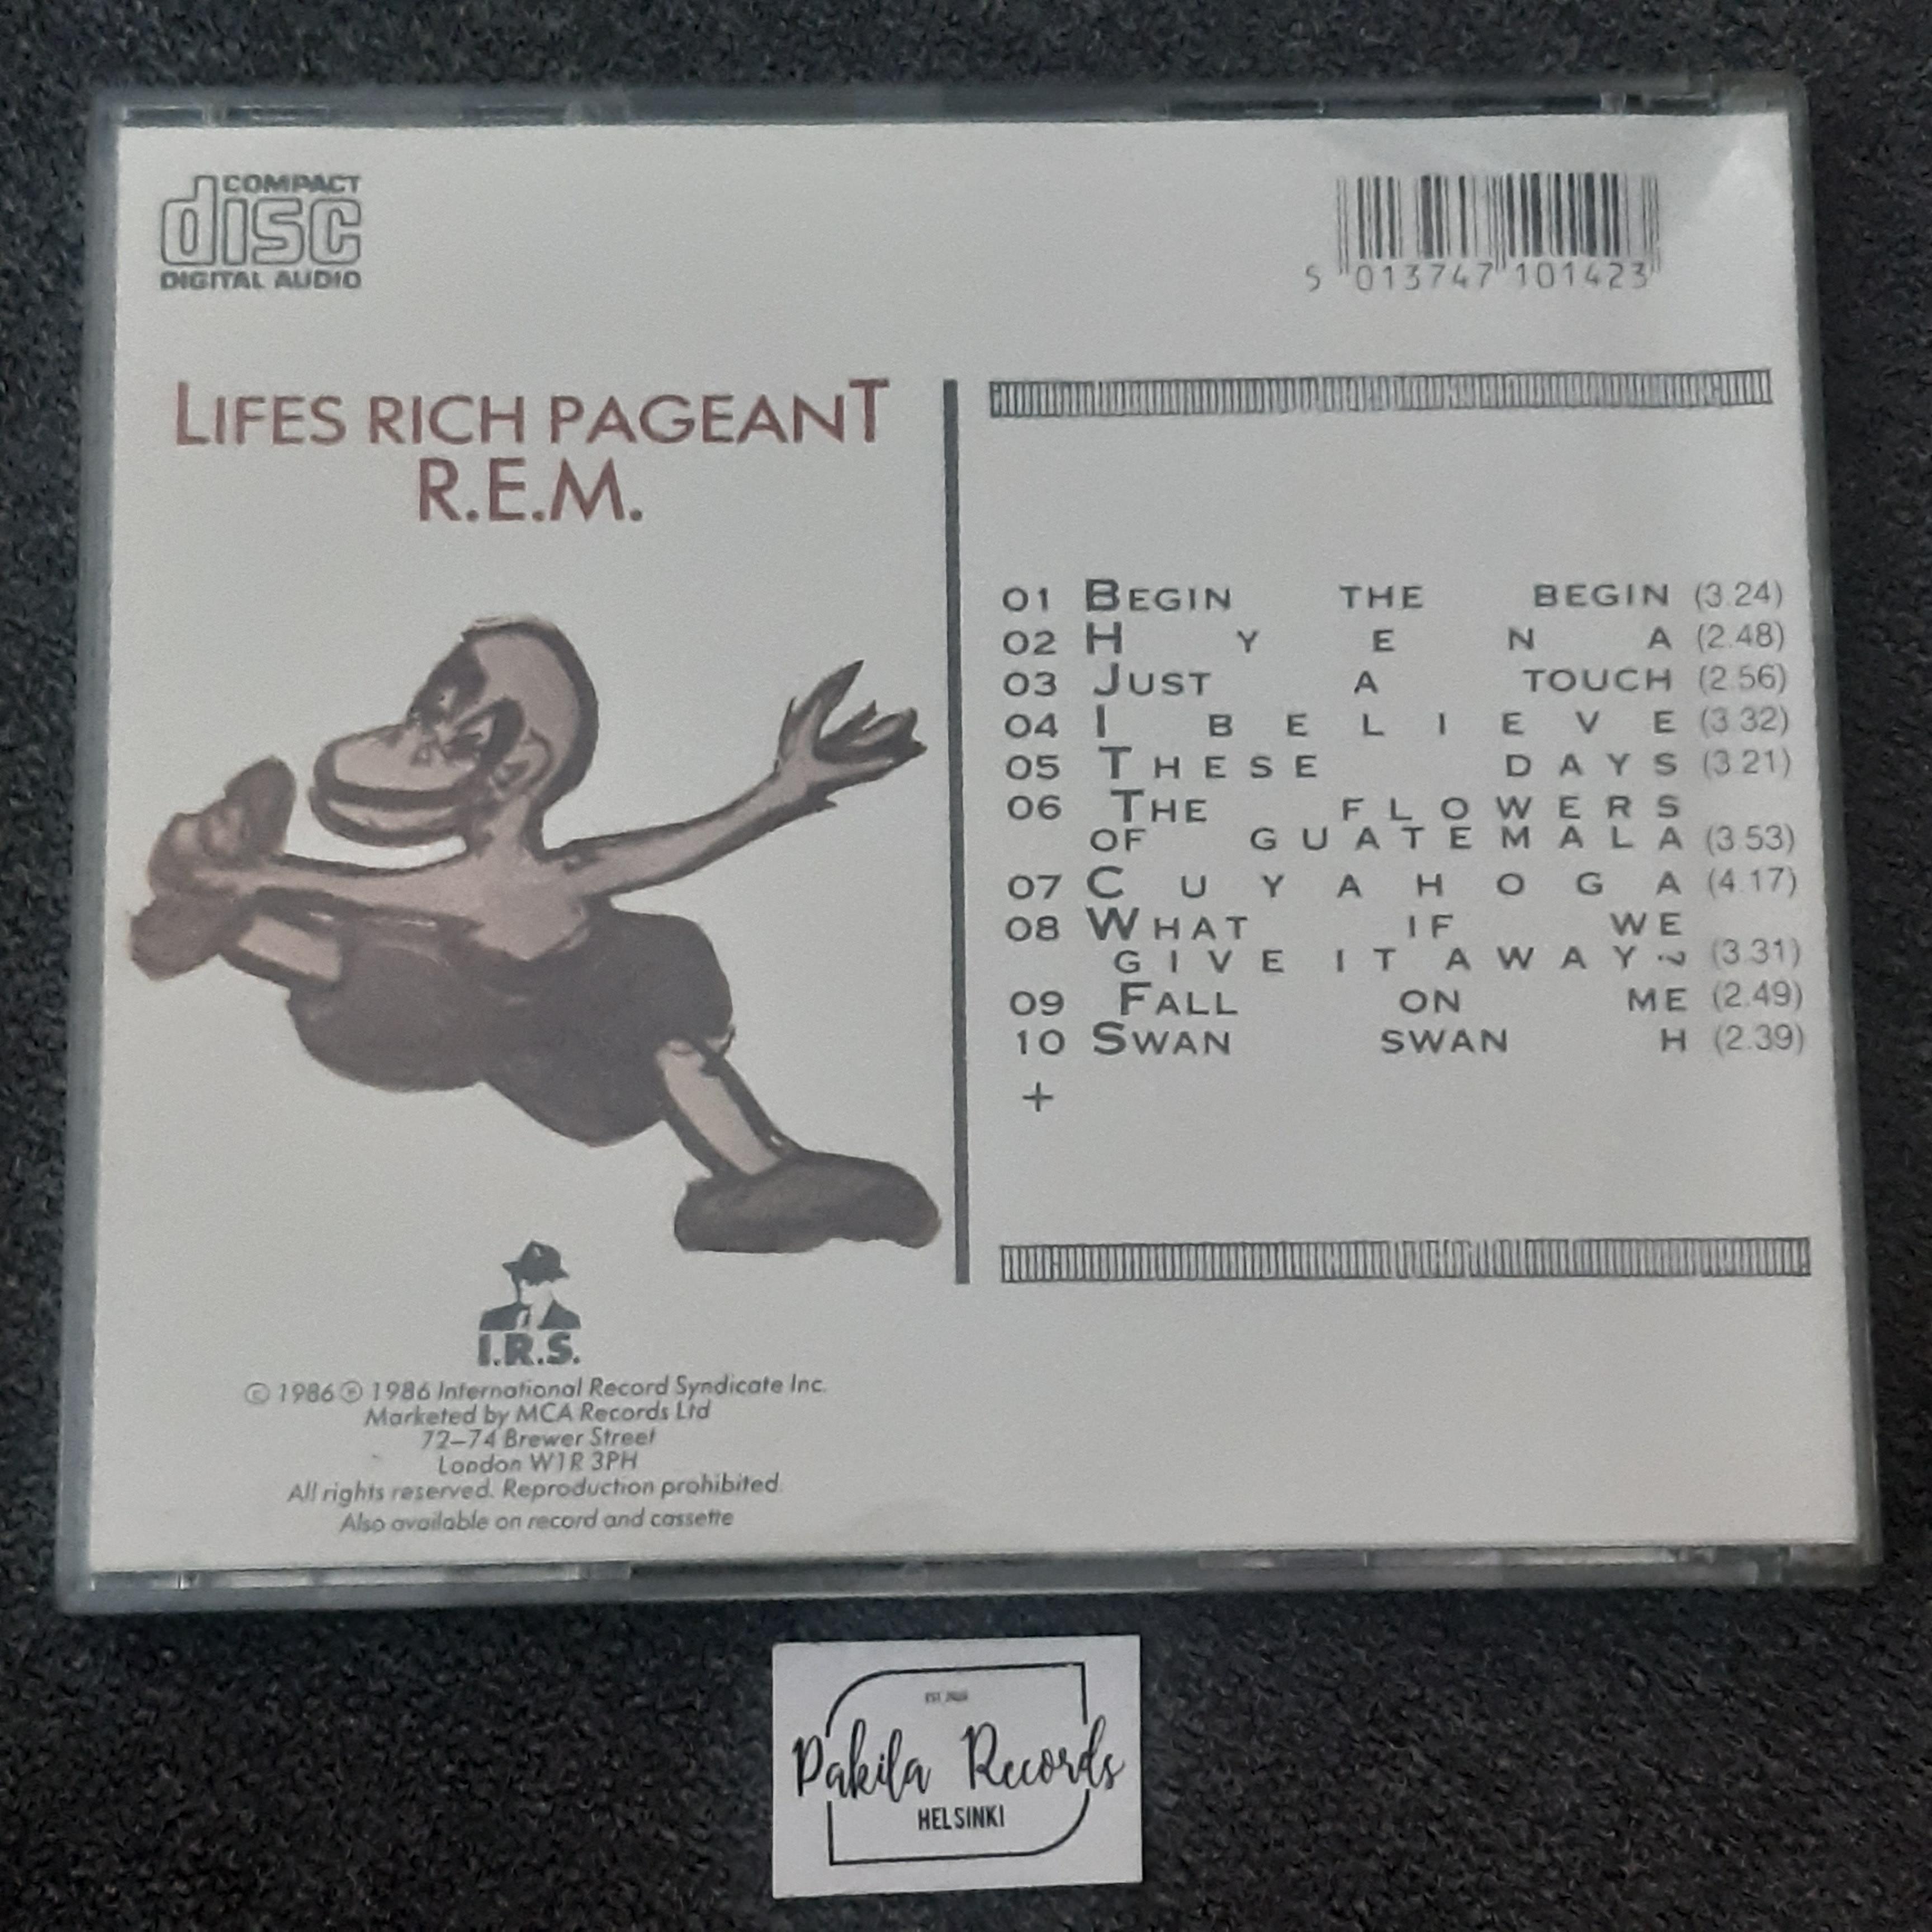 R.E.M. - Lifes Rich Pageant - CD (käytetty)